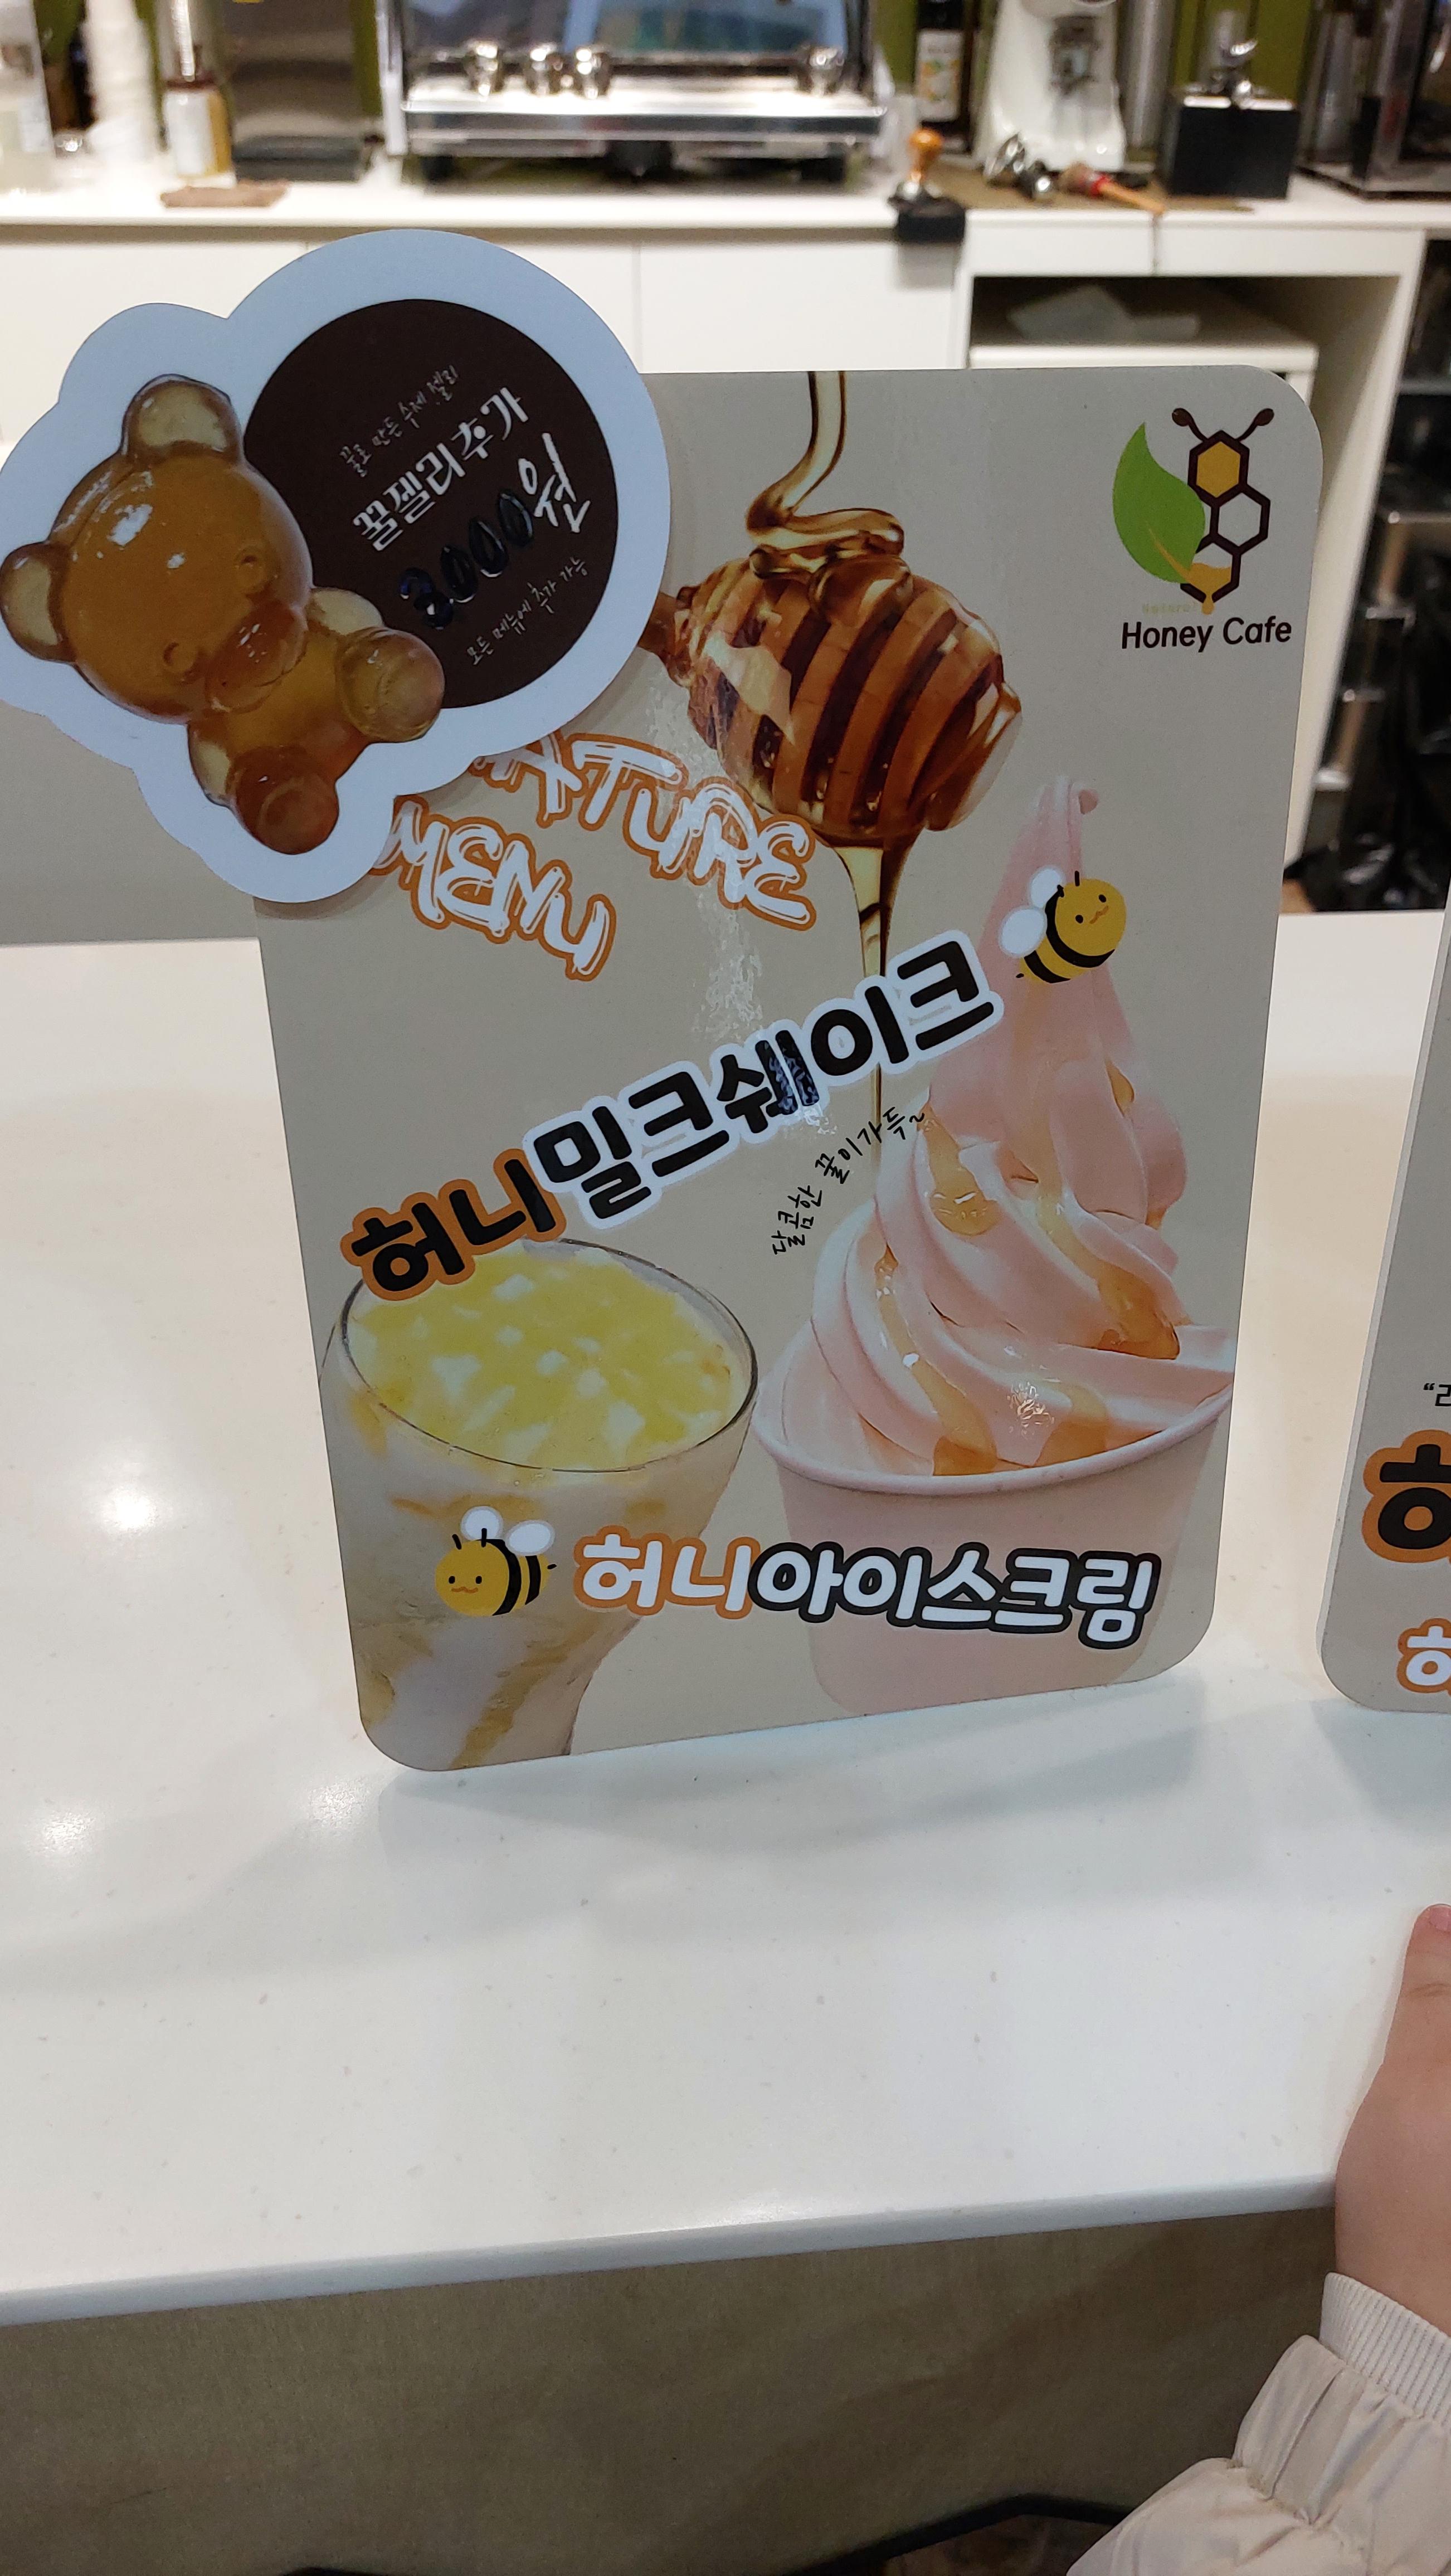 안성팜랜드 허니카페 허니아이스크림 광고판